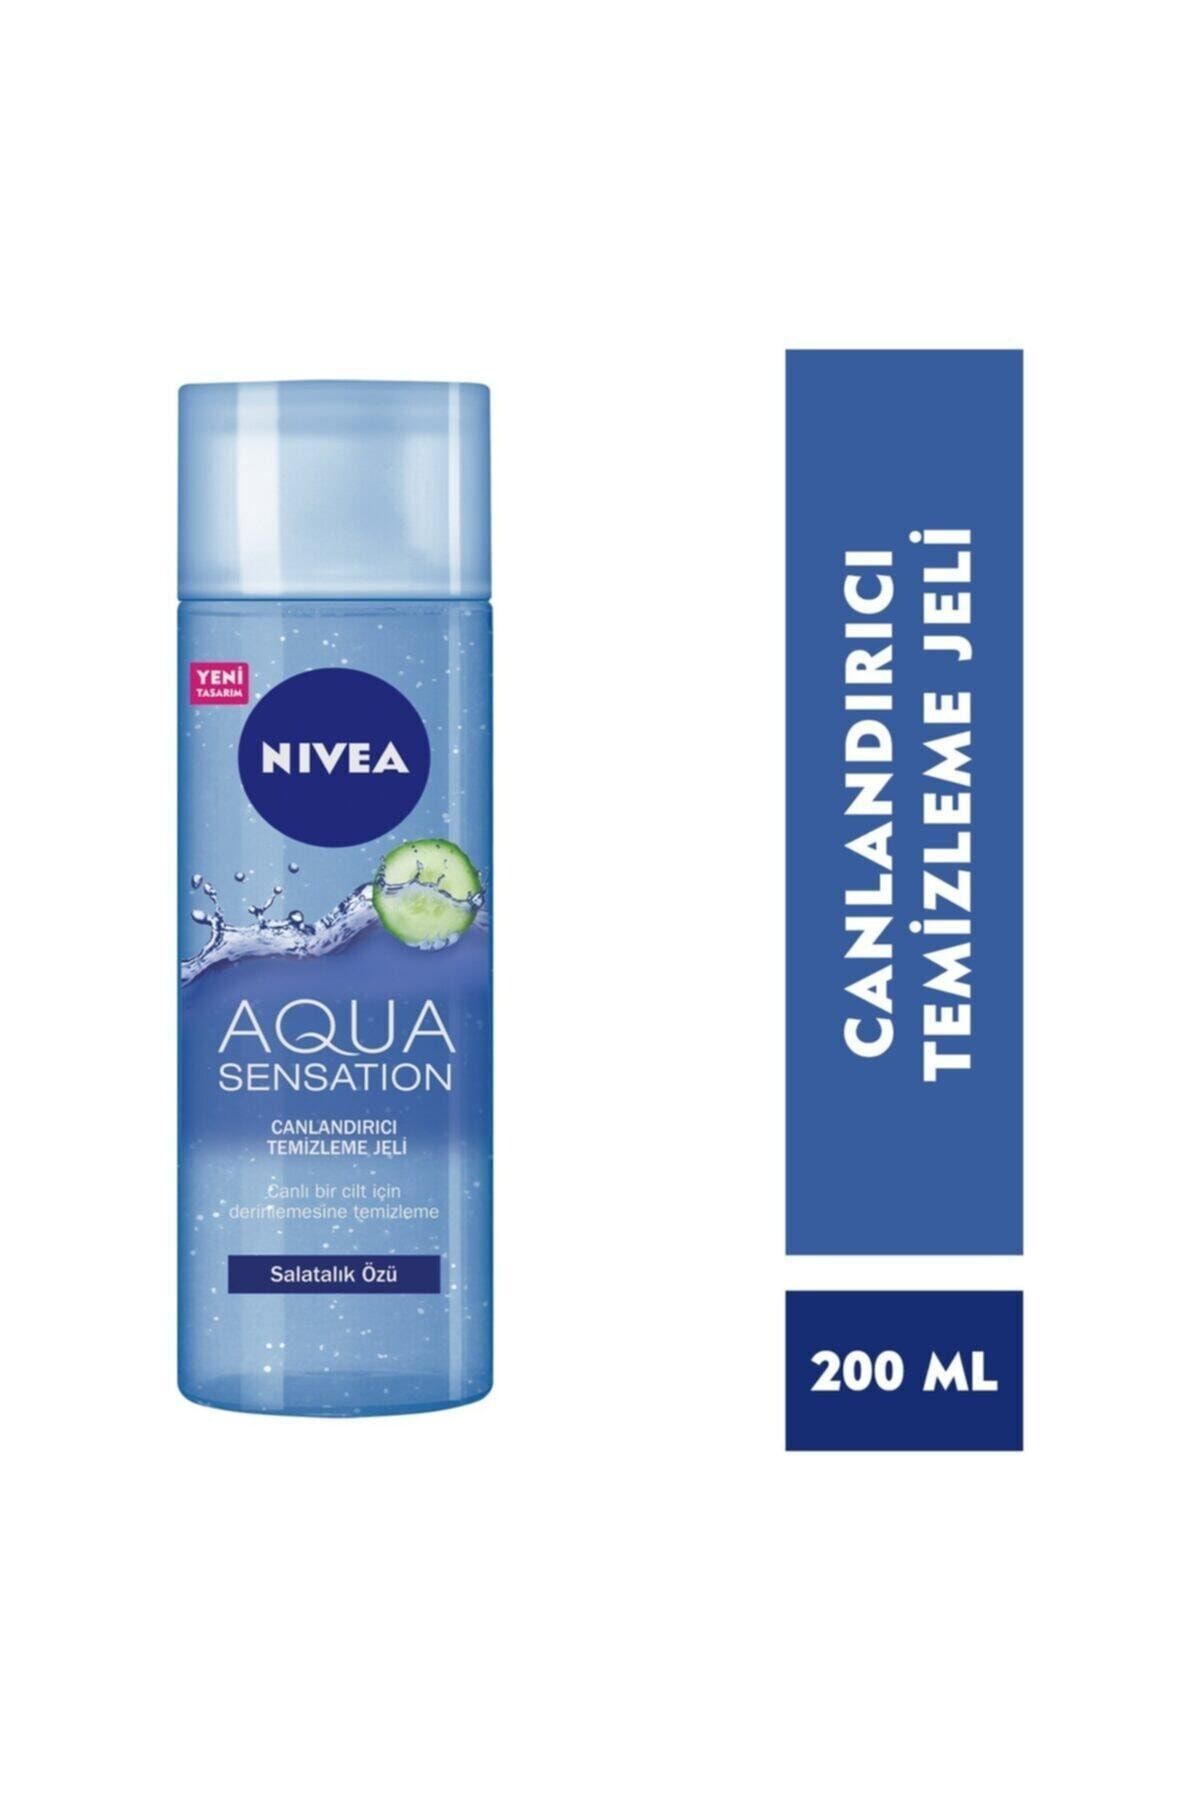 NIVEA Aqua Sensation Canlandırıcı Temizleme Jeli 200 ml